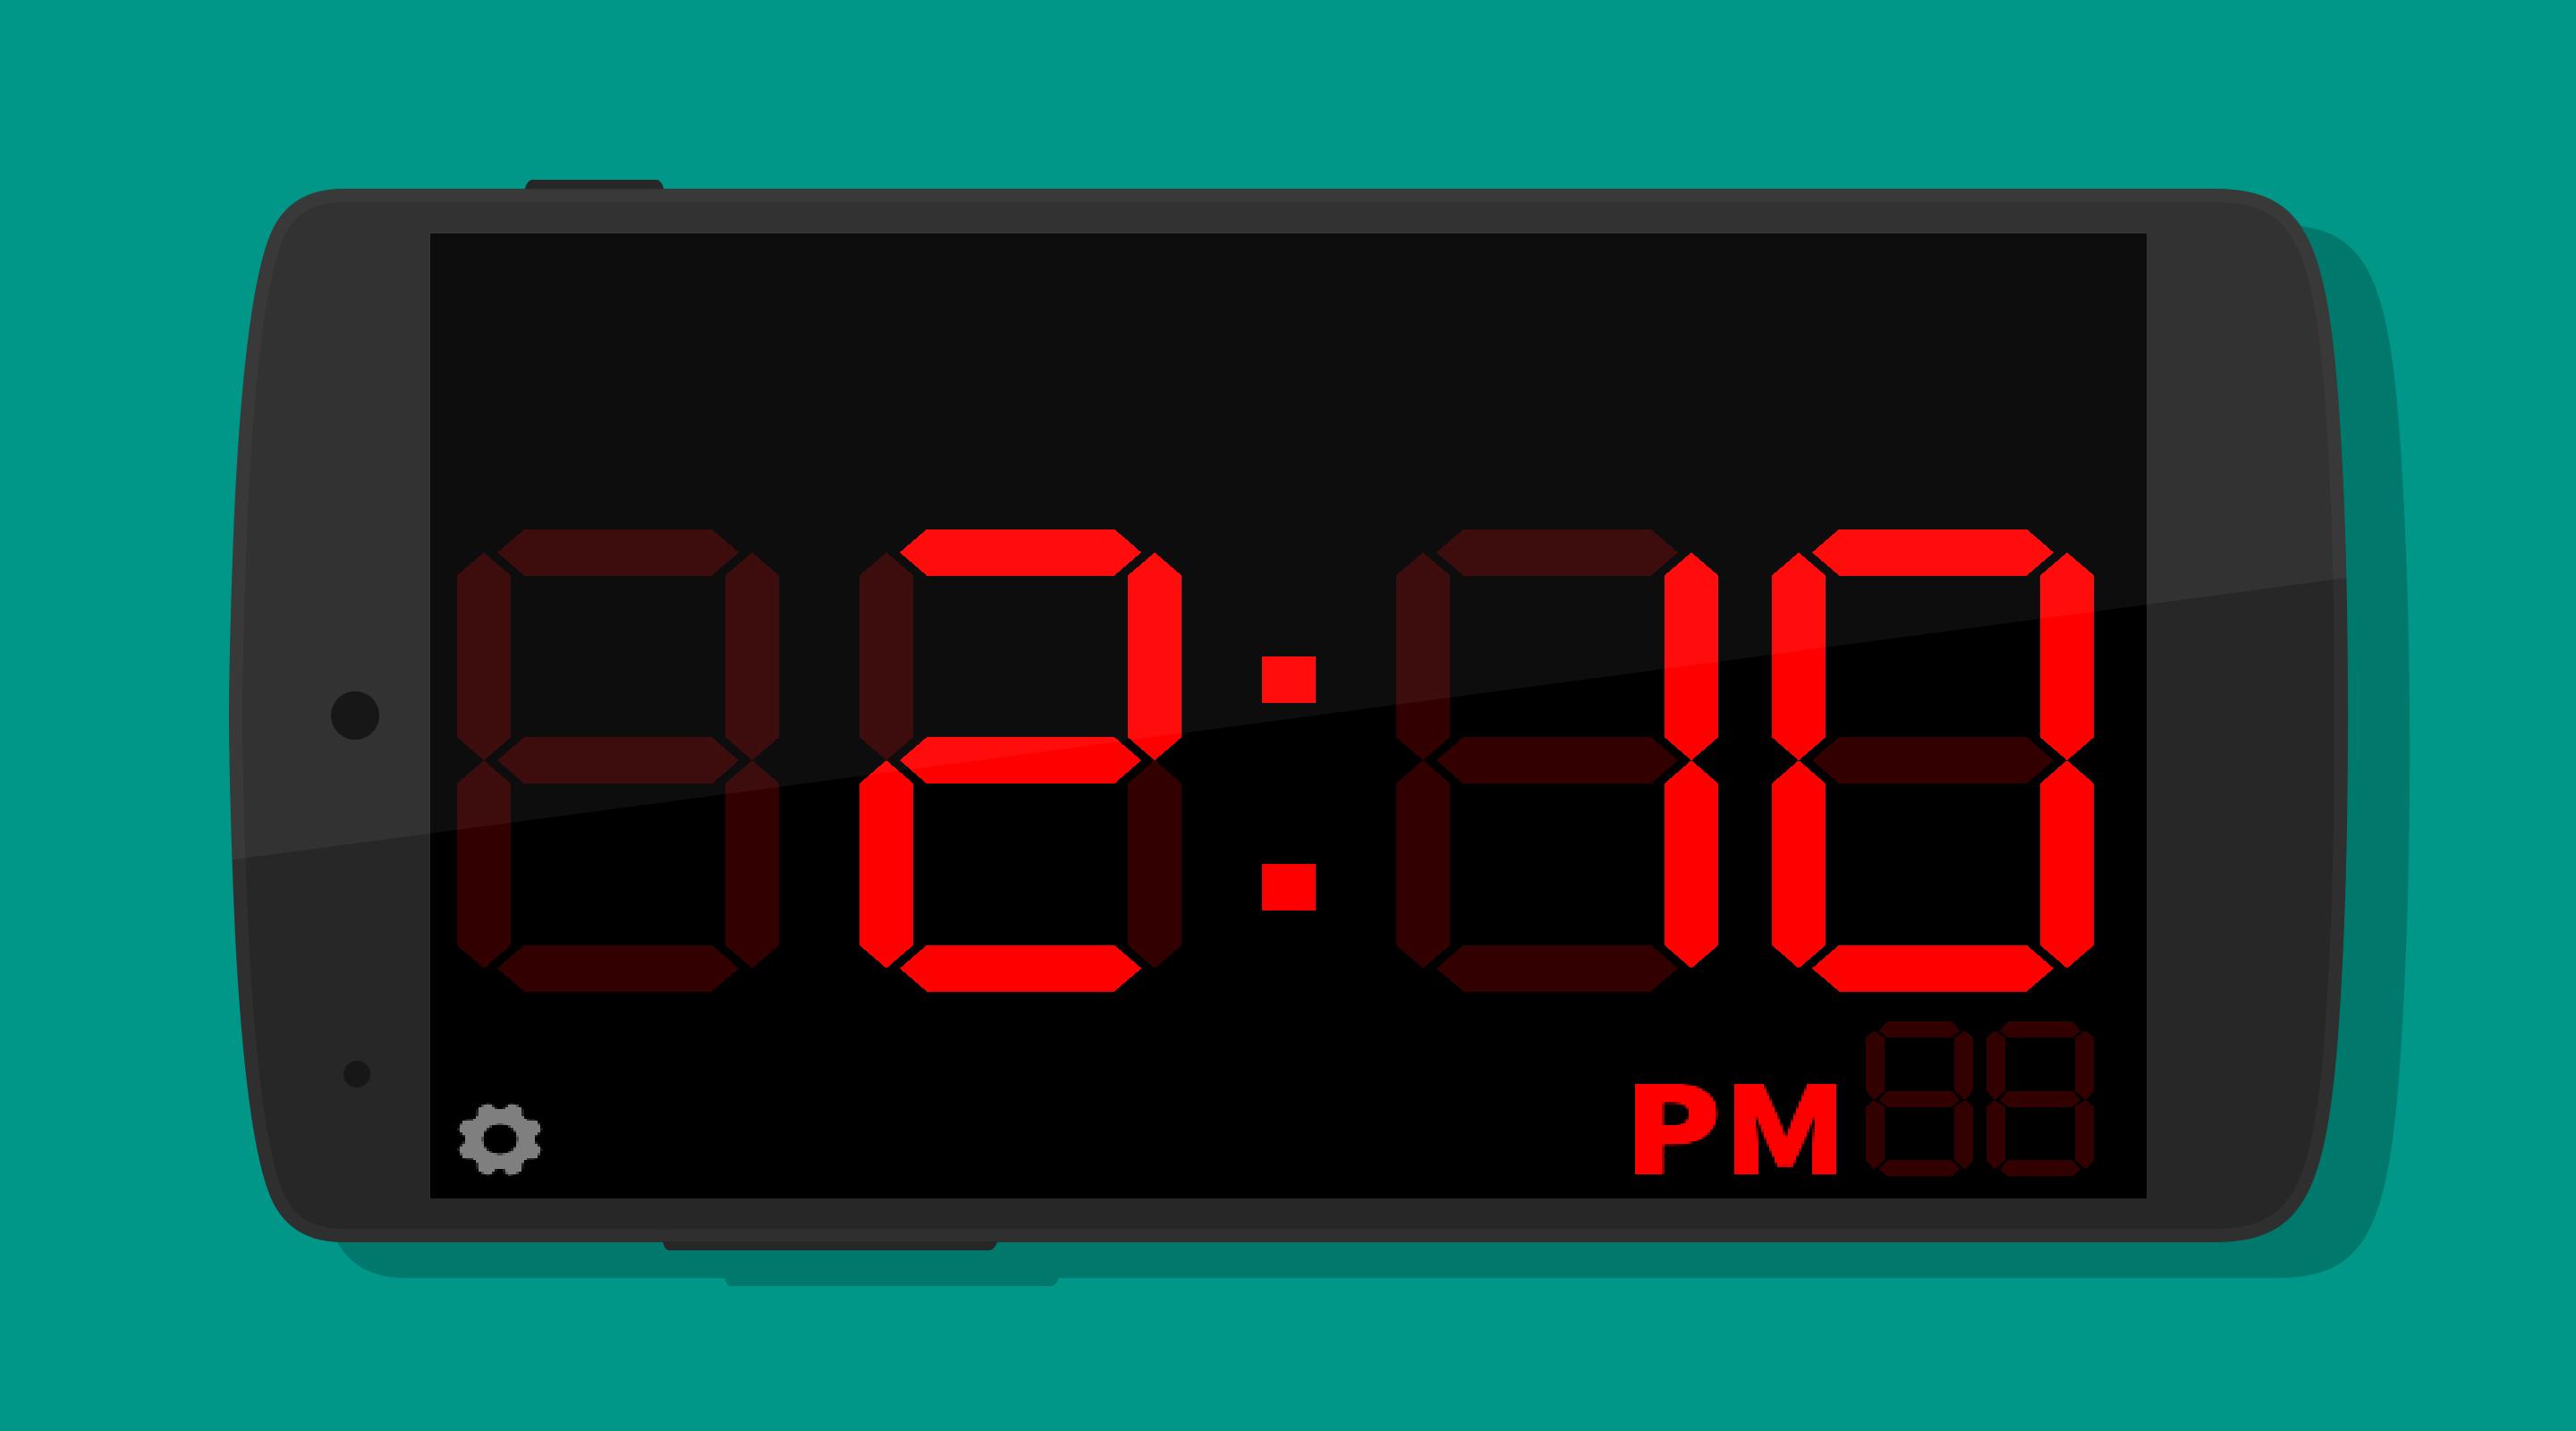 14 июня час. Часы Digital Clock 200730138828.4. Электронные часы диджитал клок 1018. Циферблат электронных часов. Электронные часы 10:00.